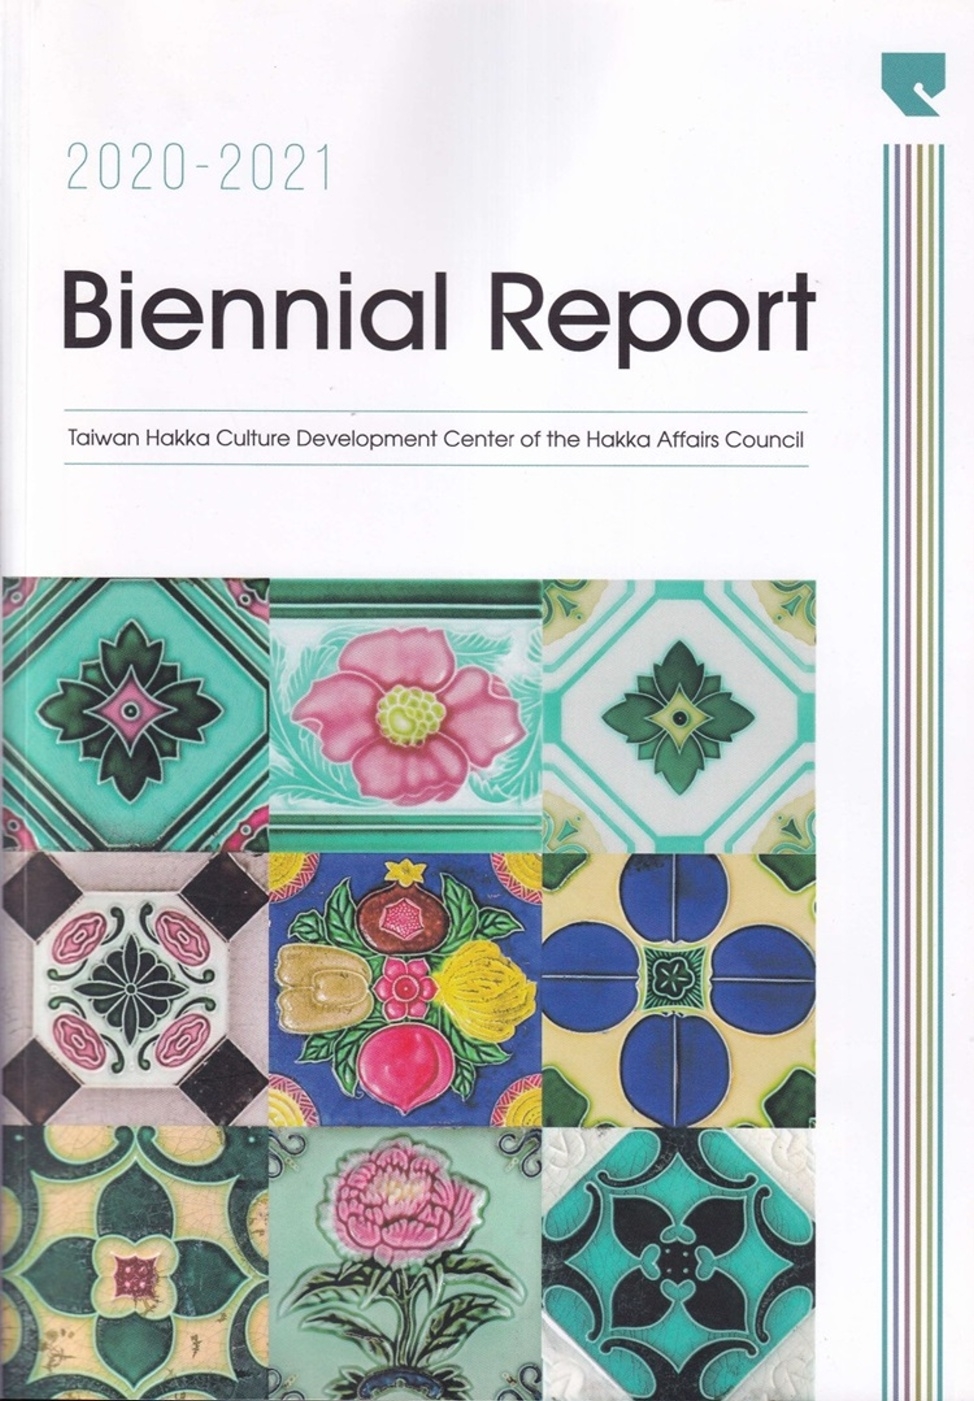 2020-2021 Biennial Report：Taiwan Hakka Culture Development Center of the Hakka Affairs Council